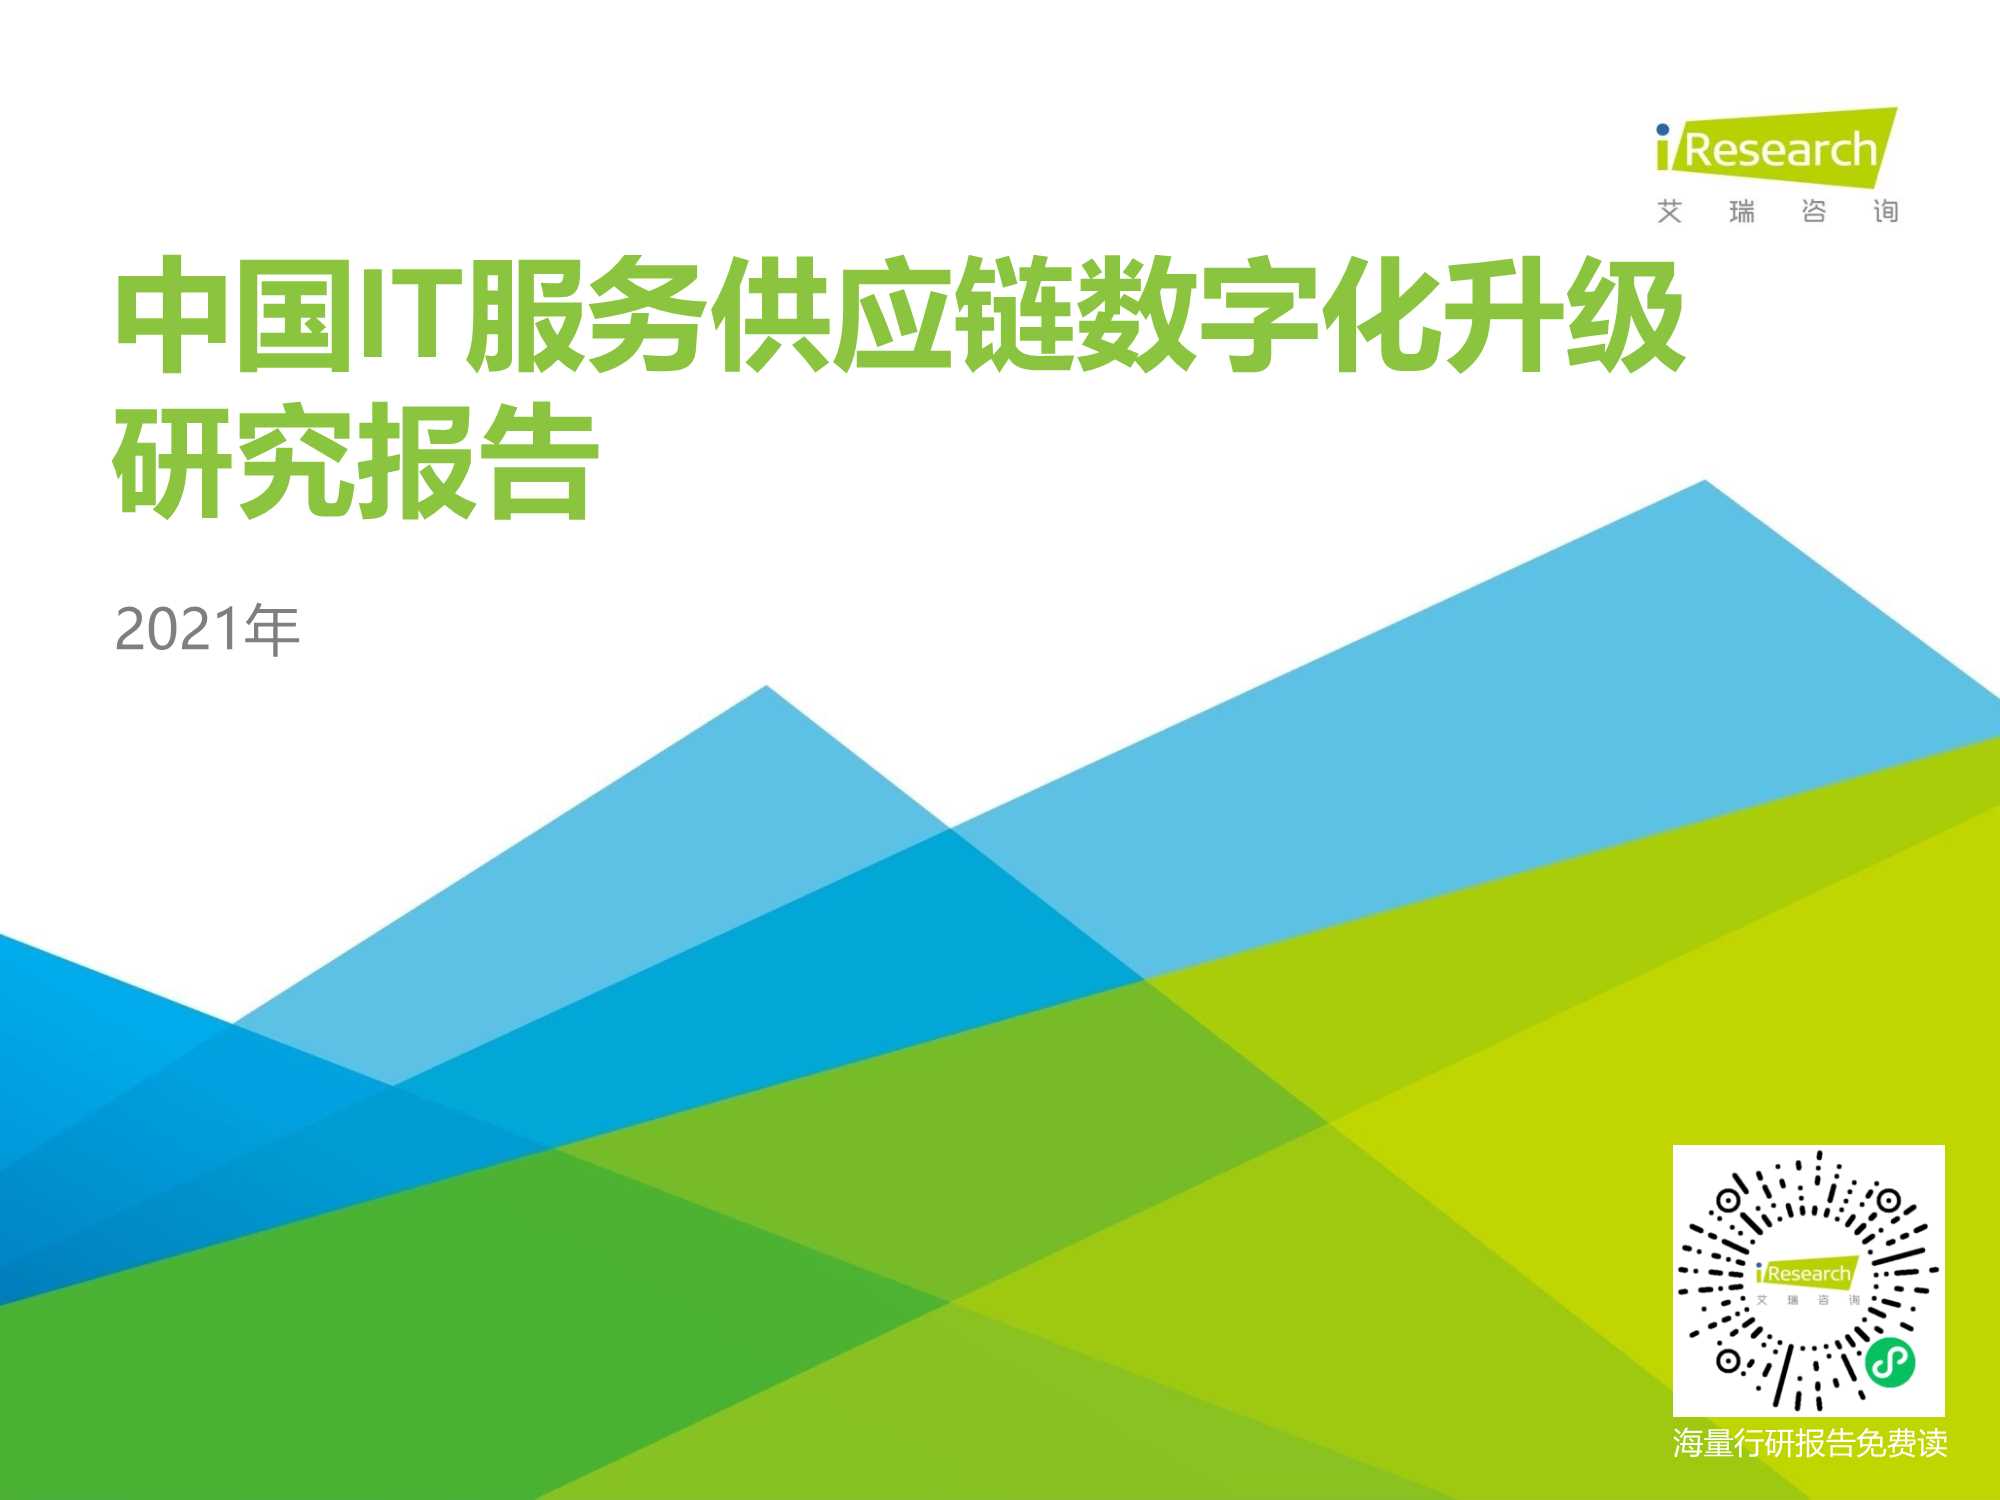 艾瑞咨询-2021年中国IT服务供应链数字化升级研究报告-2021.08-44页